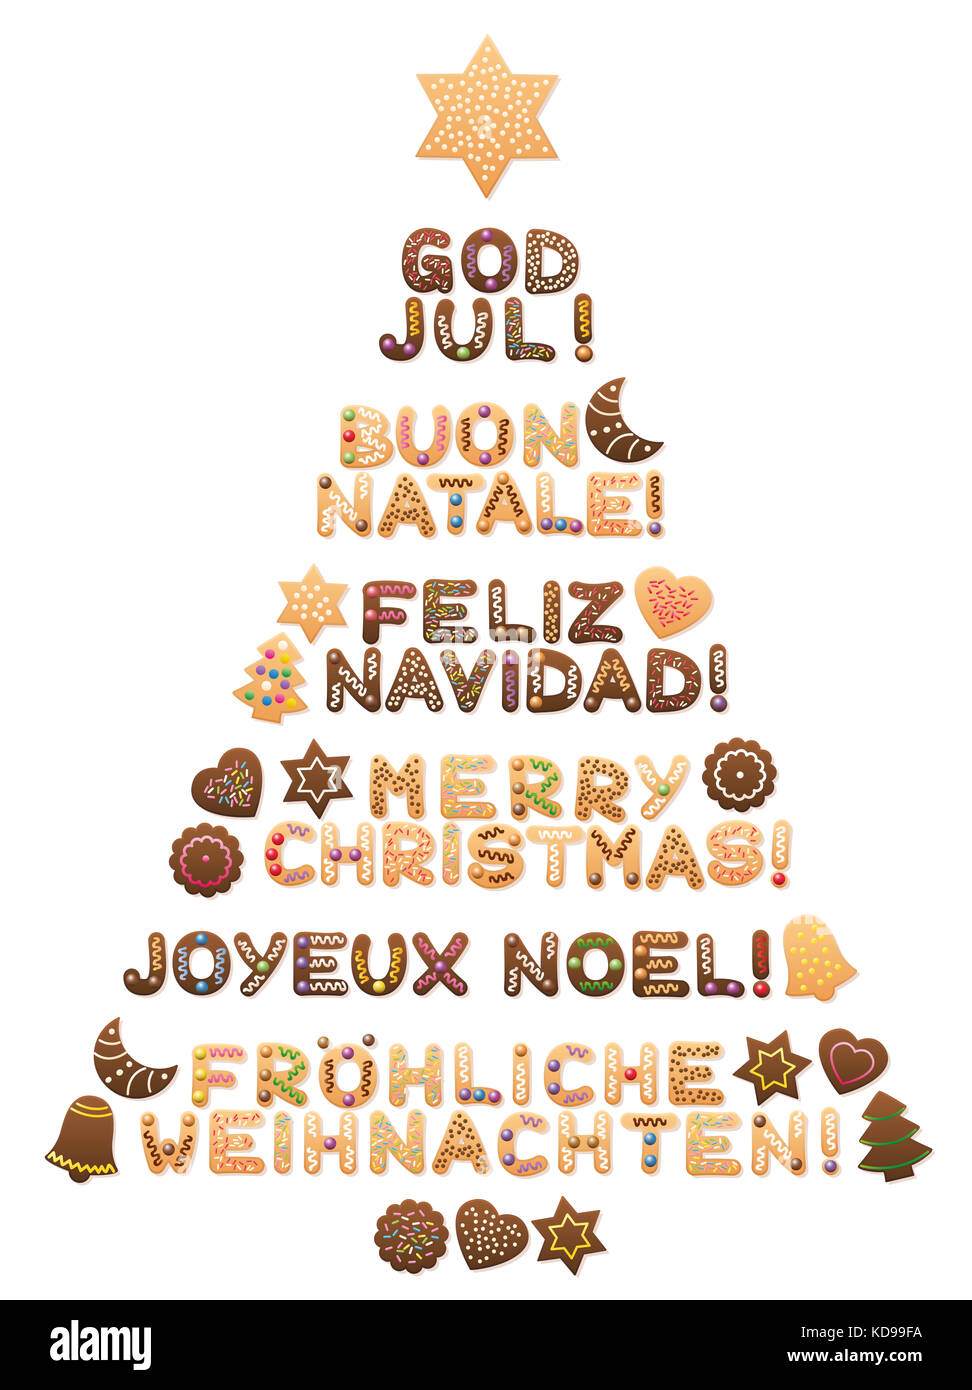 Poesie Di Natale In Spagnolo.Parole Scritte In Lingua Francese Immagini E Fotos Stock Alamy